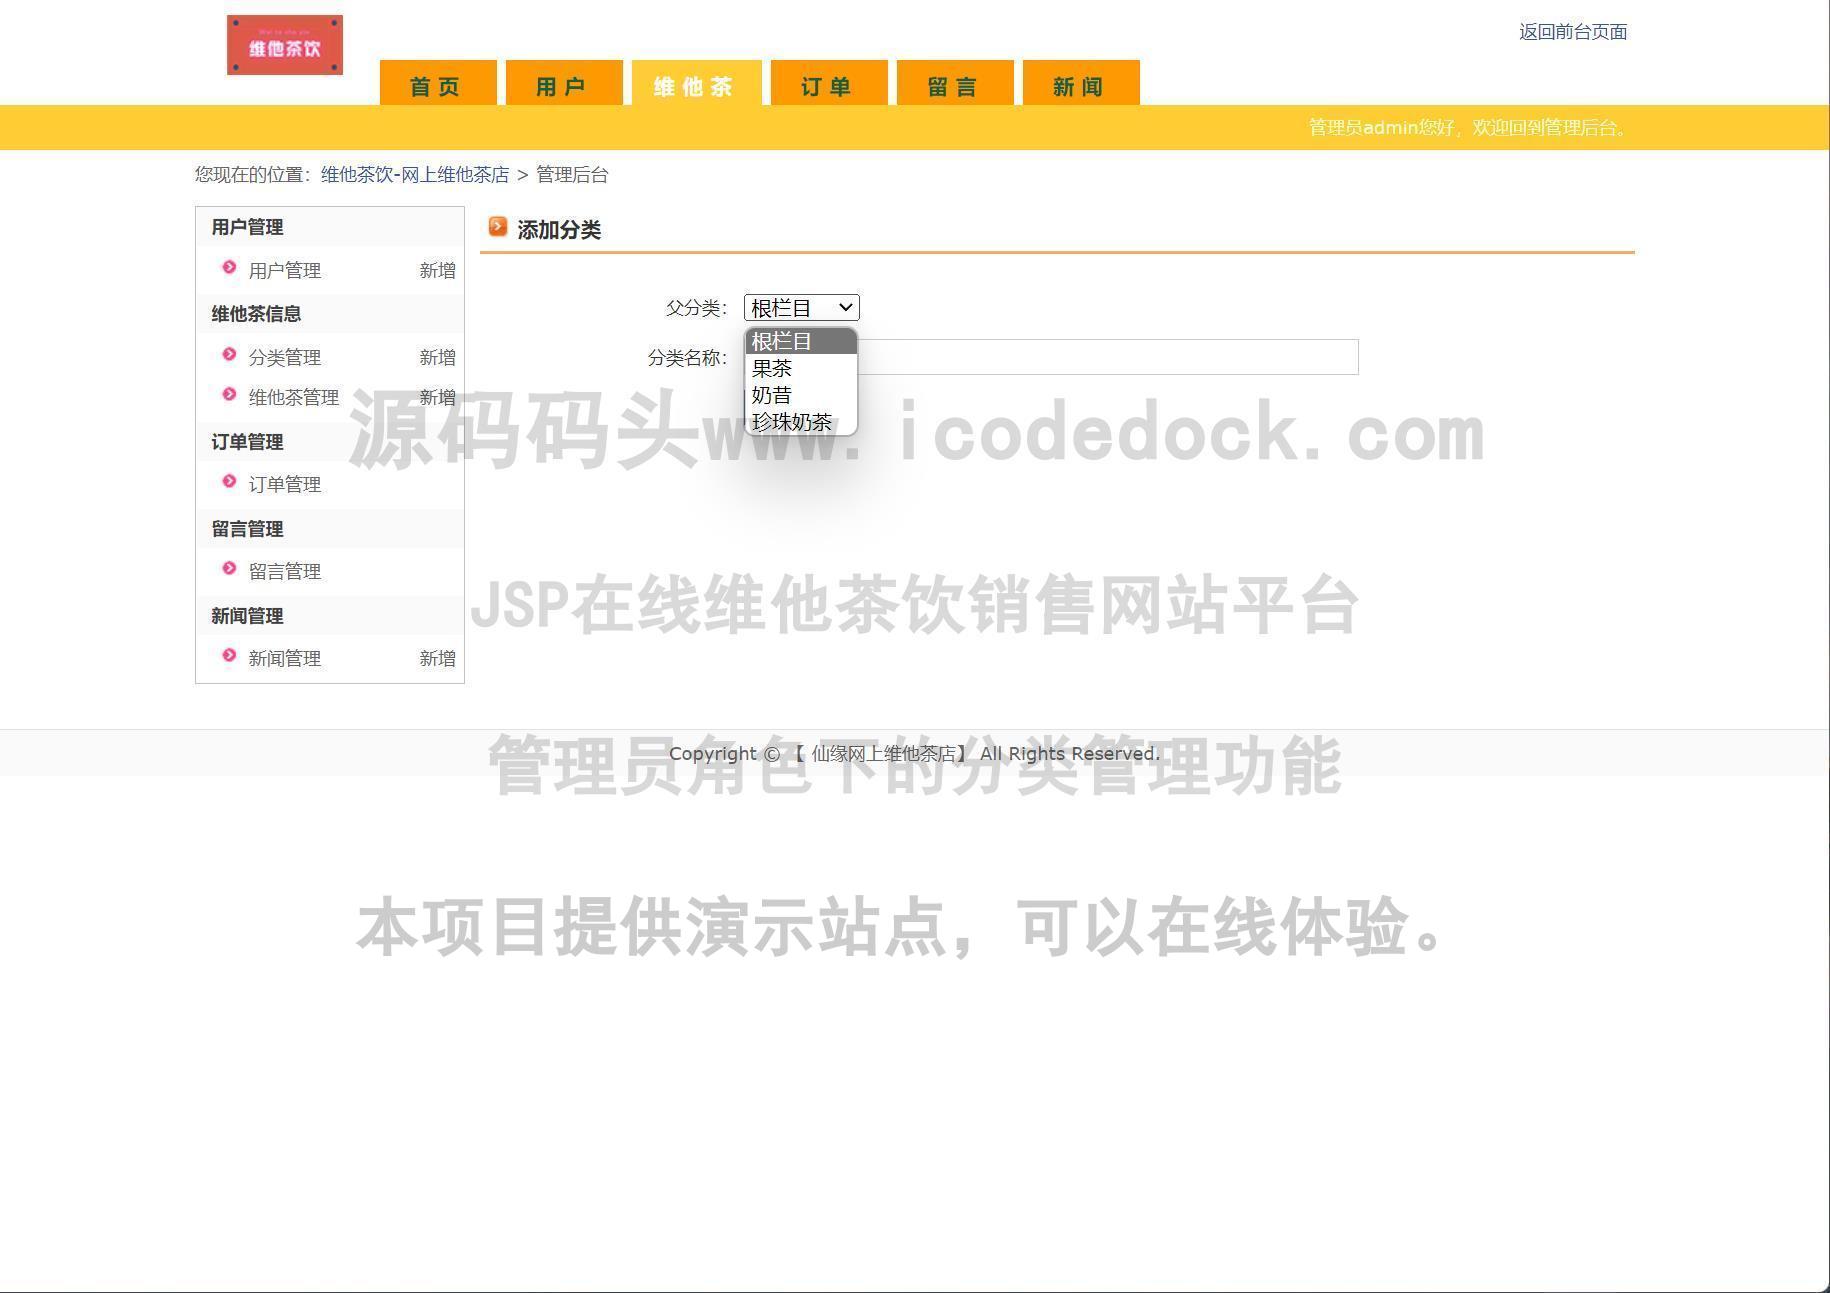 源码码头-JSP在线维他茶饮销售网站平台-管理员角色-分类管理